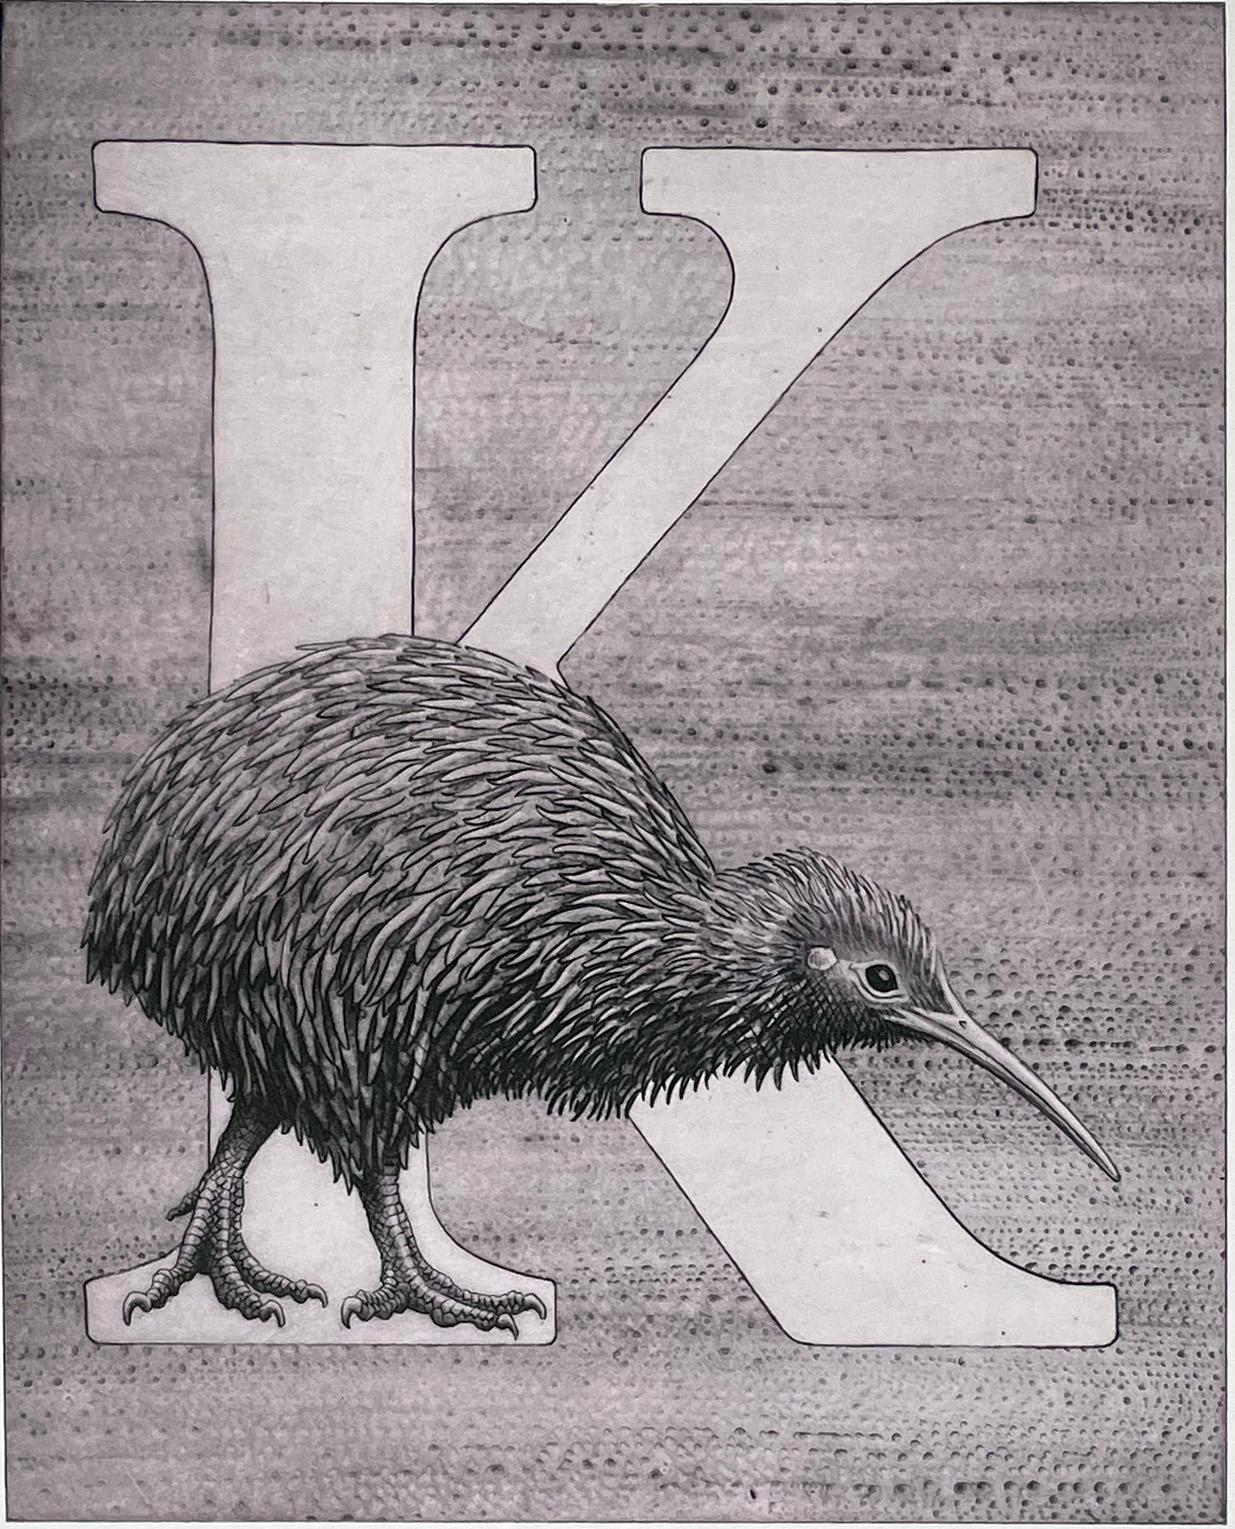 "K", for Kiwi from Kelvin Mann's animal alphabet